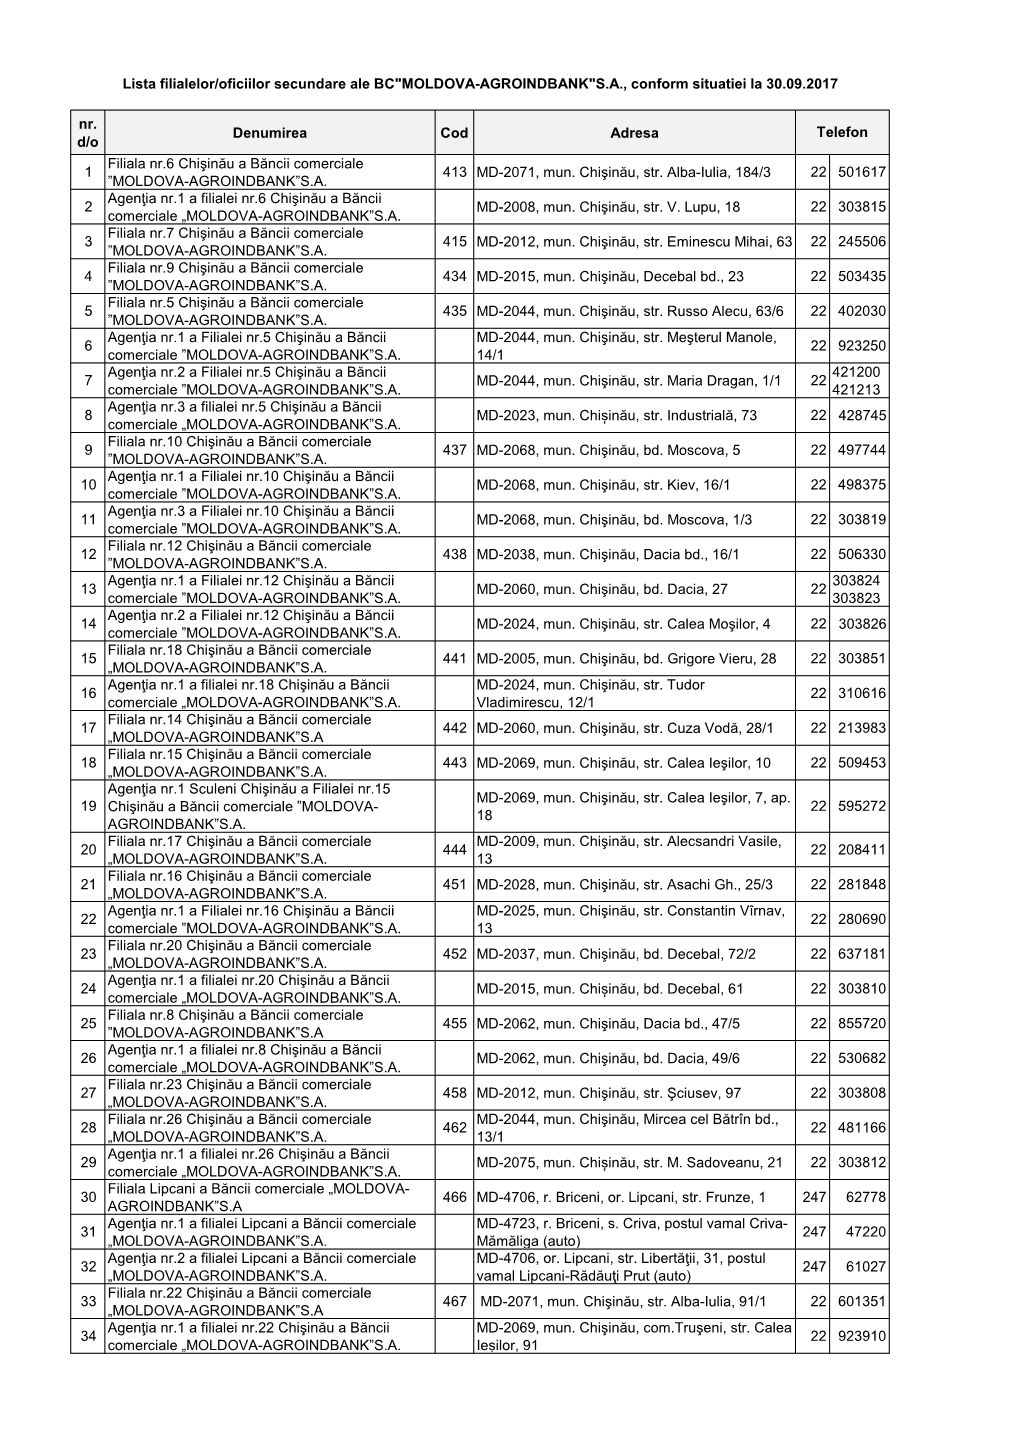 Lista Filialelor/Oficiilor Secundare Ale BC"MOLDOVA-AGROINDBANK"S.A., Conform Situatiei La 30.09.2017 Nr